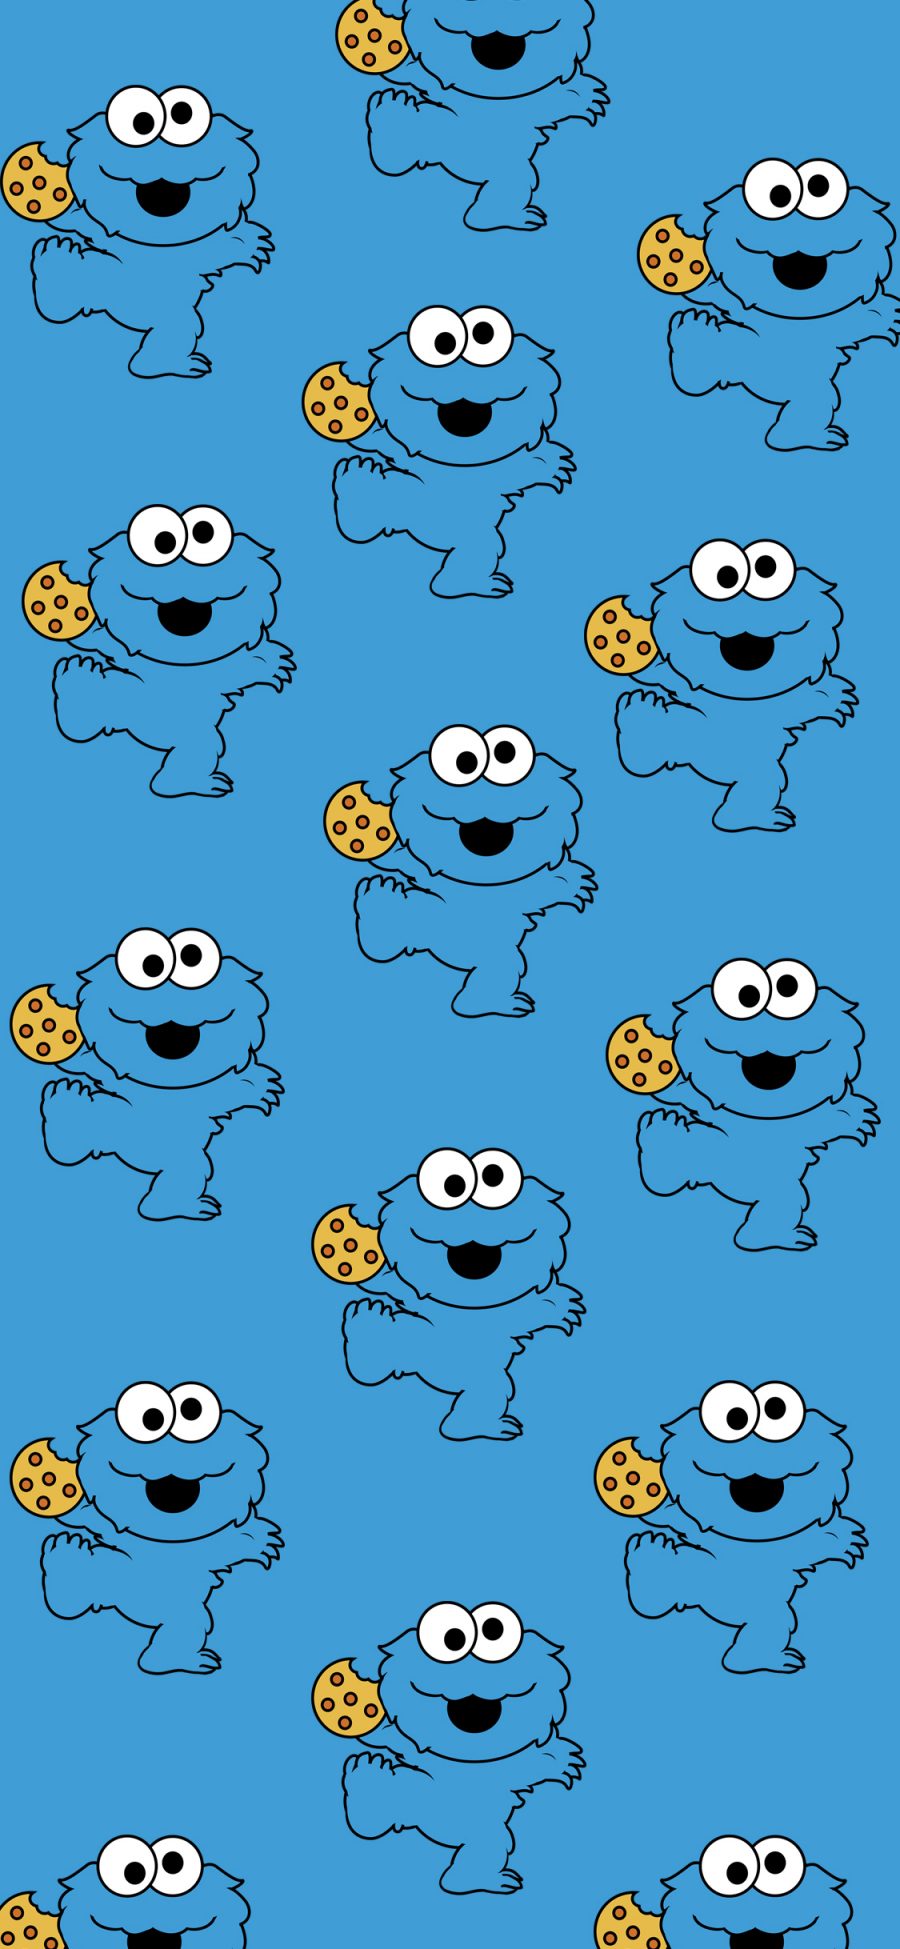 [2436×1125]芝麻街 甜饼怪 动画 美国 蓝色 平铺 苹果手机动漫壁纸图片